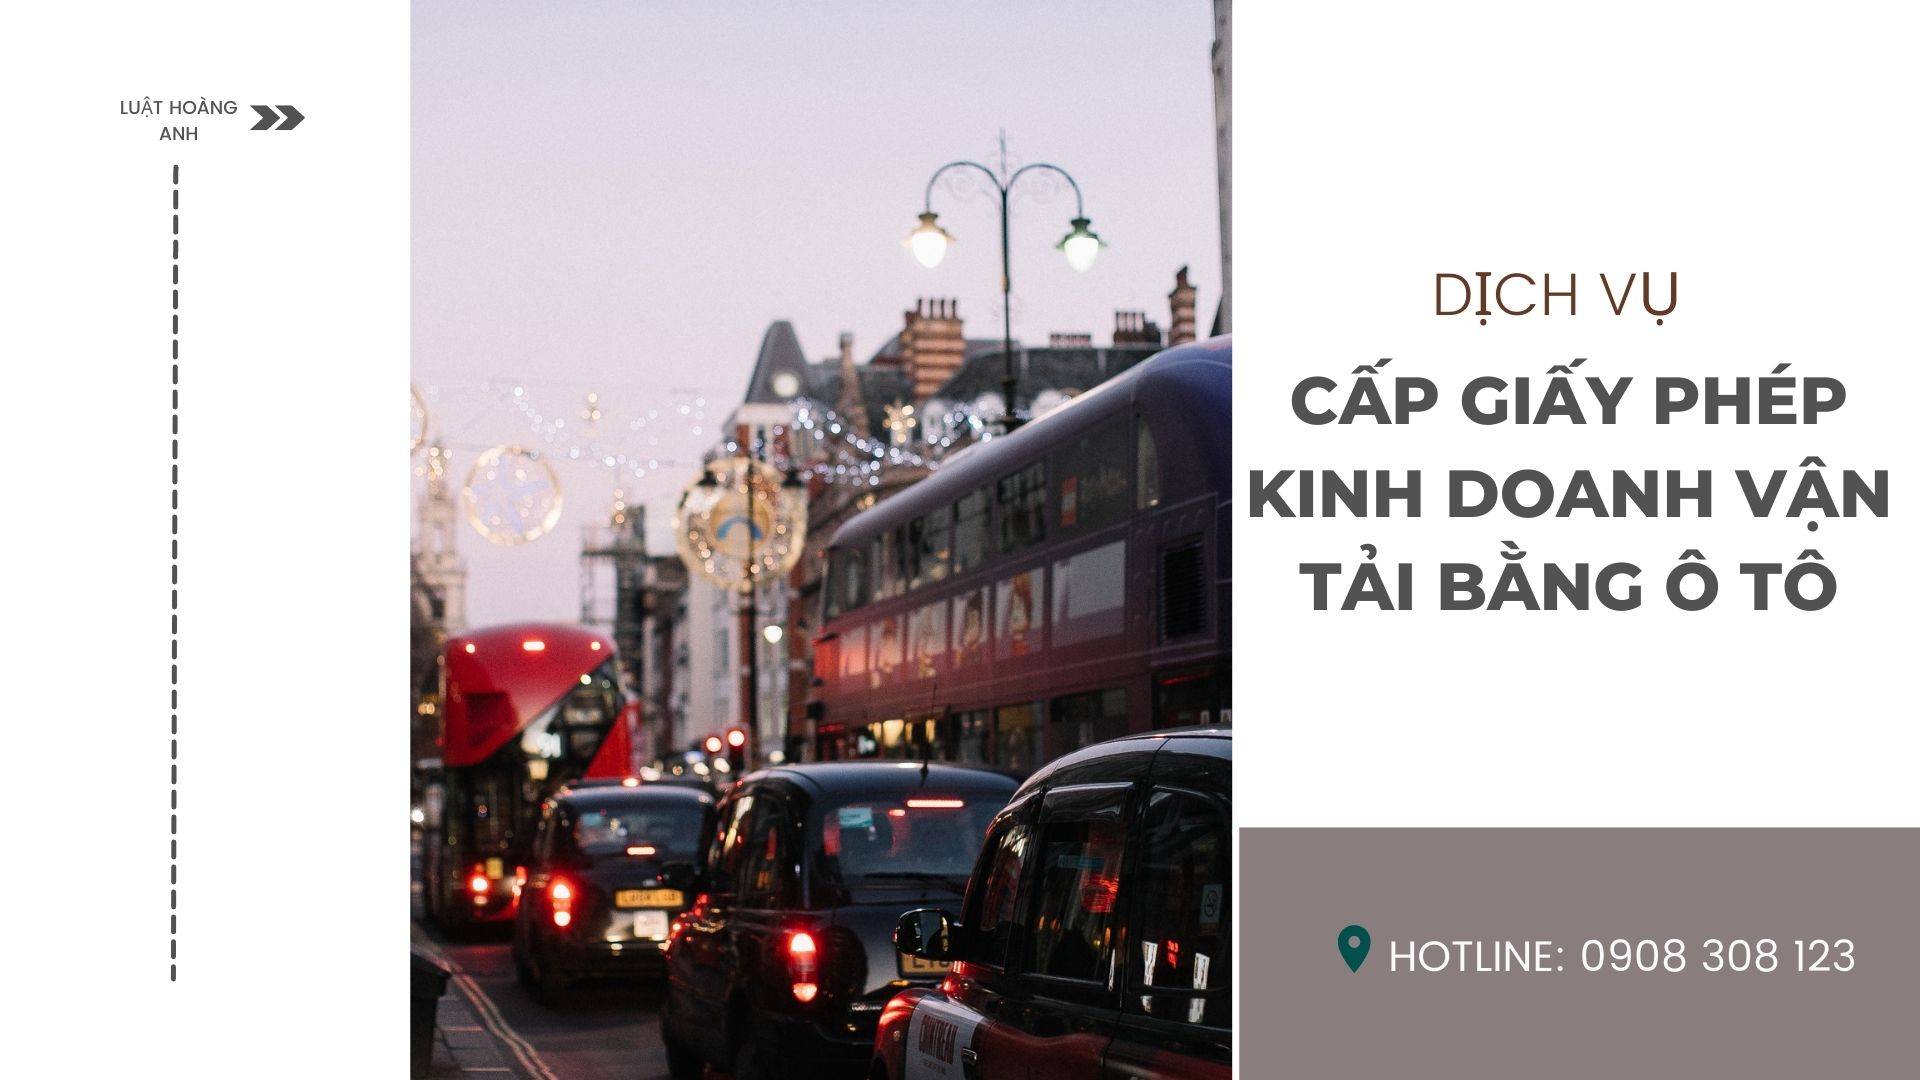 Dịch vụ cấp giấy phép kinh doanh vận tải bằng ô tô tại tỉnh Quảng Trị